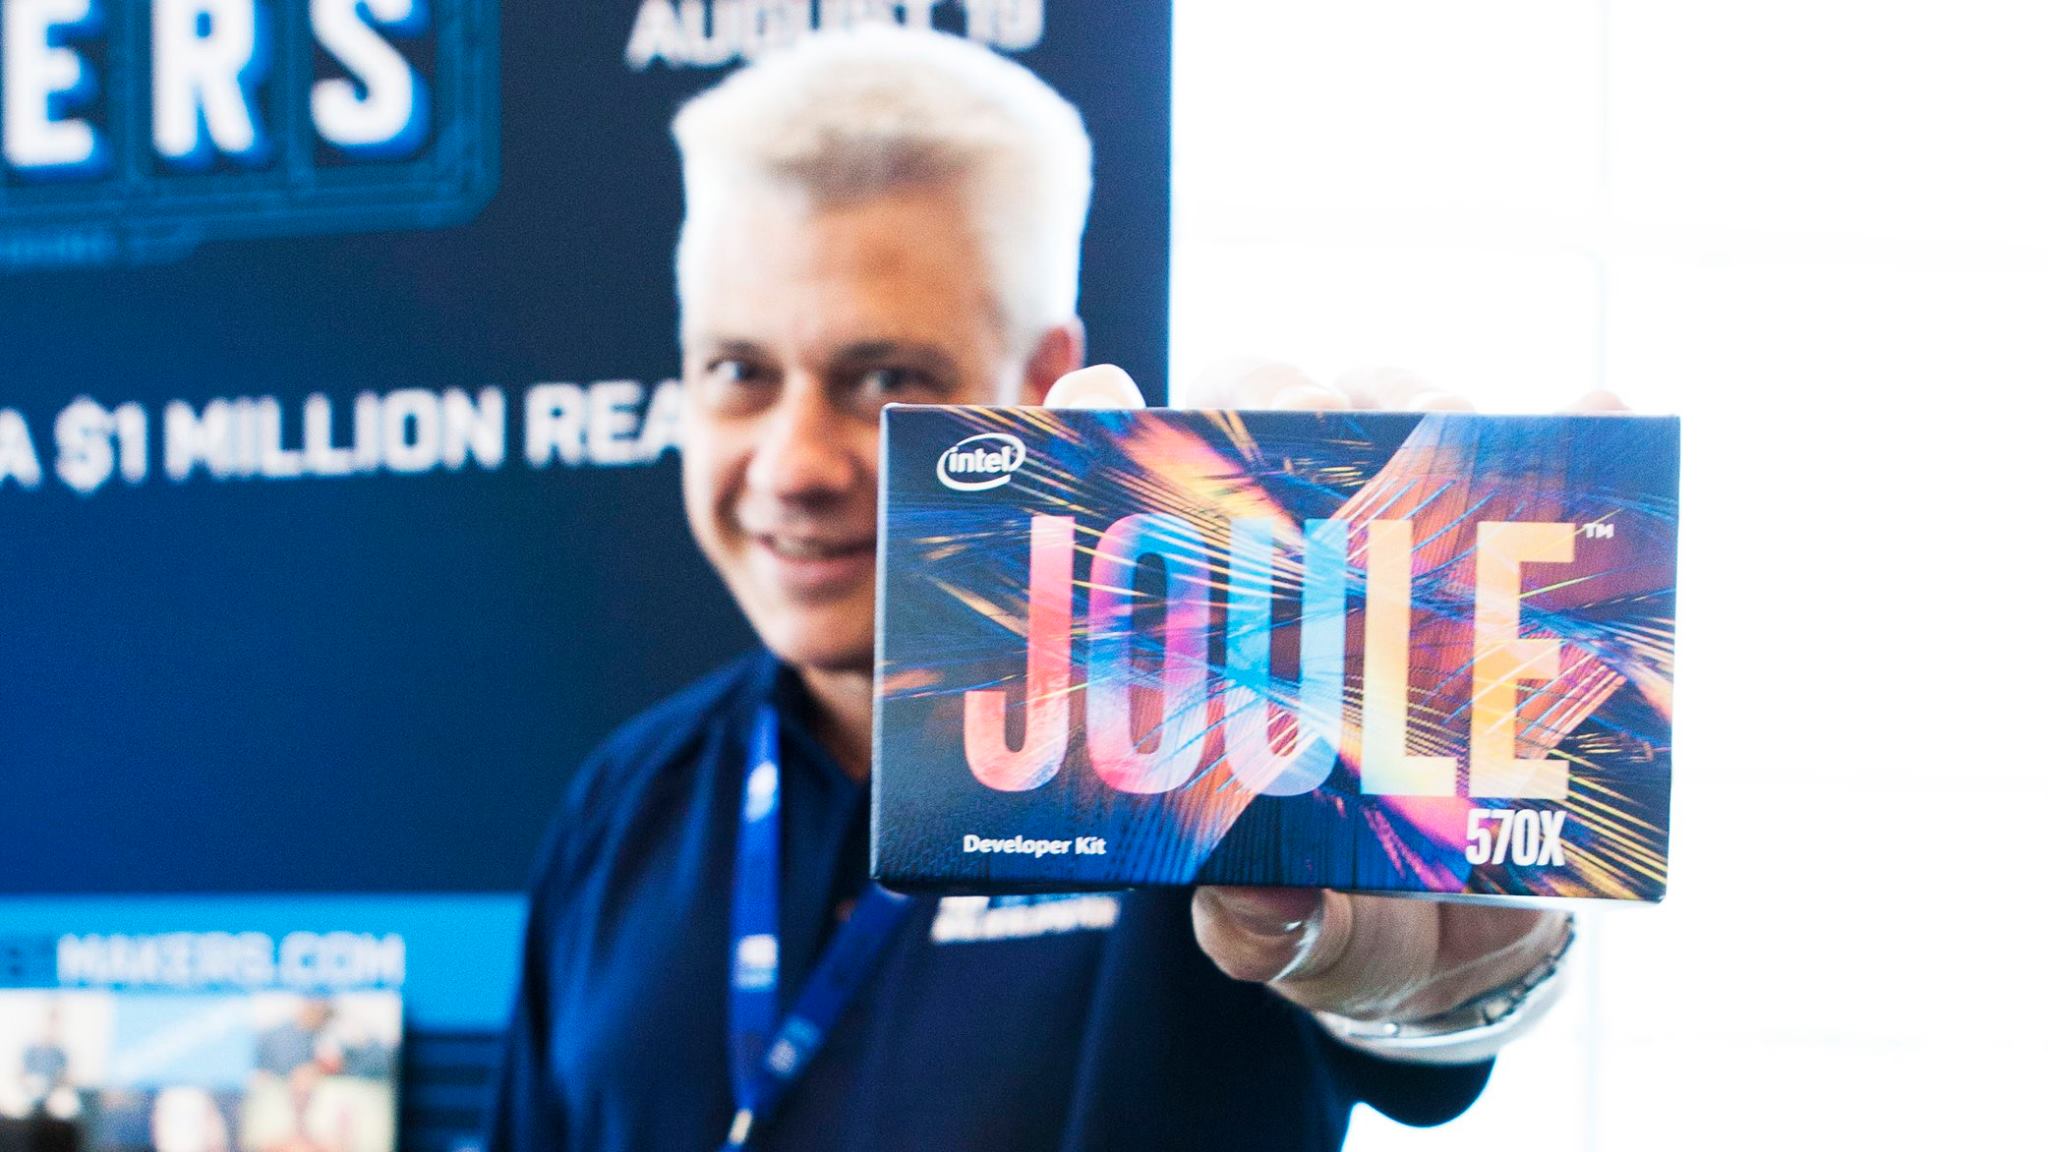 Intel James Jackson e Intel Joule